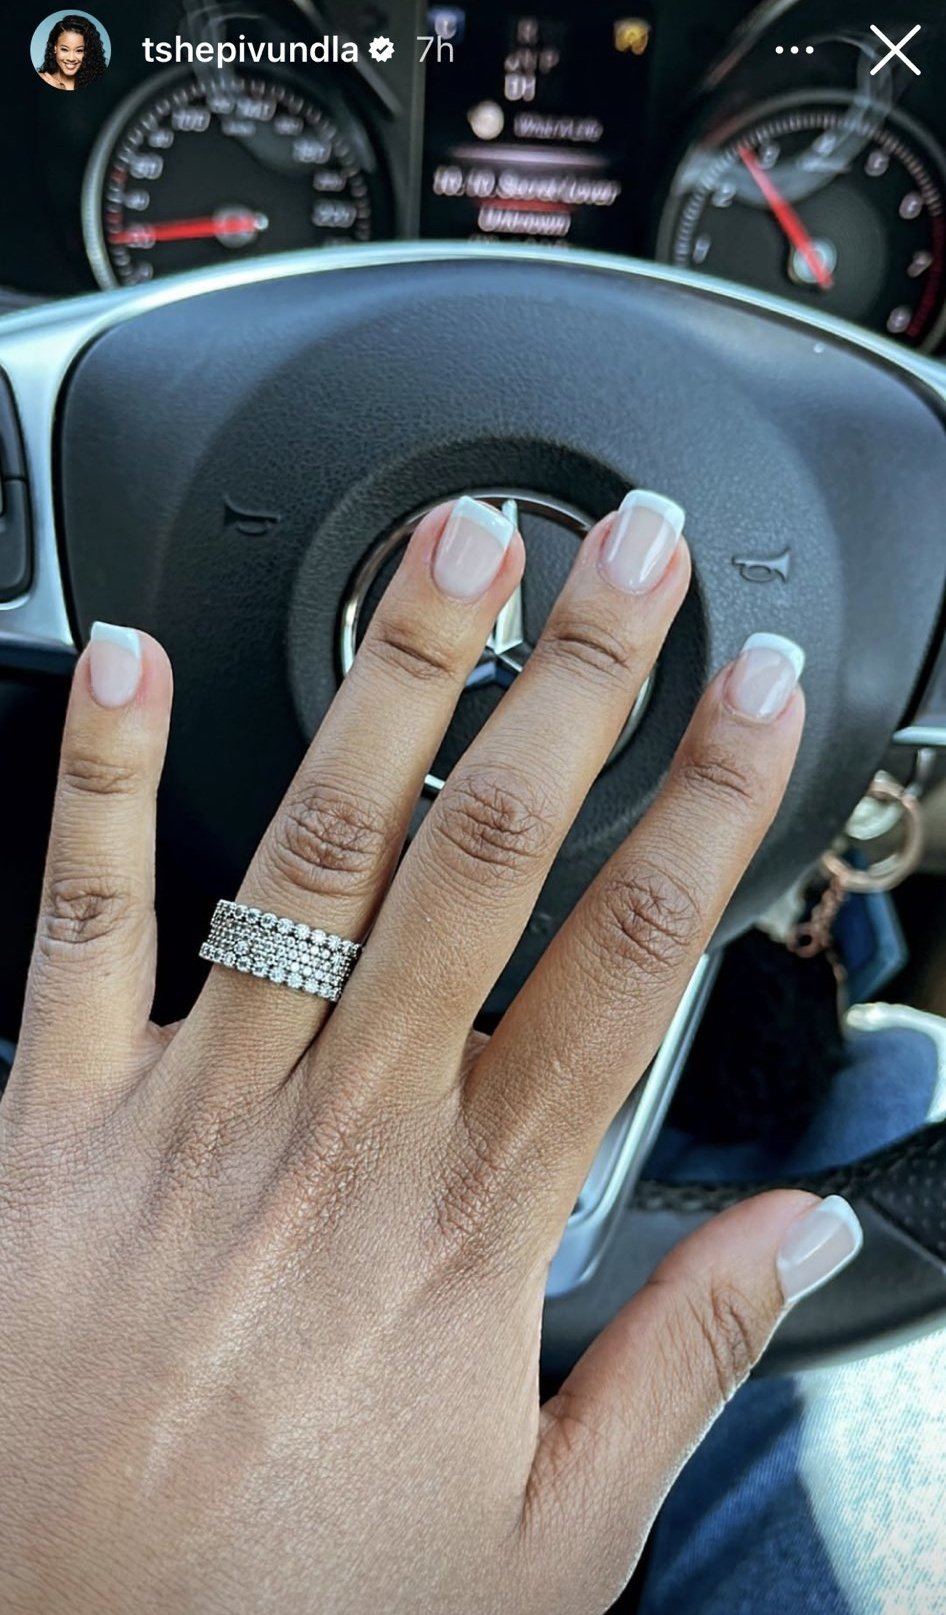 Tshepi Vundla showing off her engagement ring - Source: Instagram